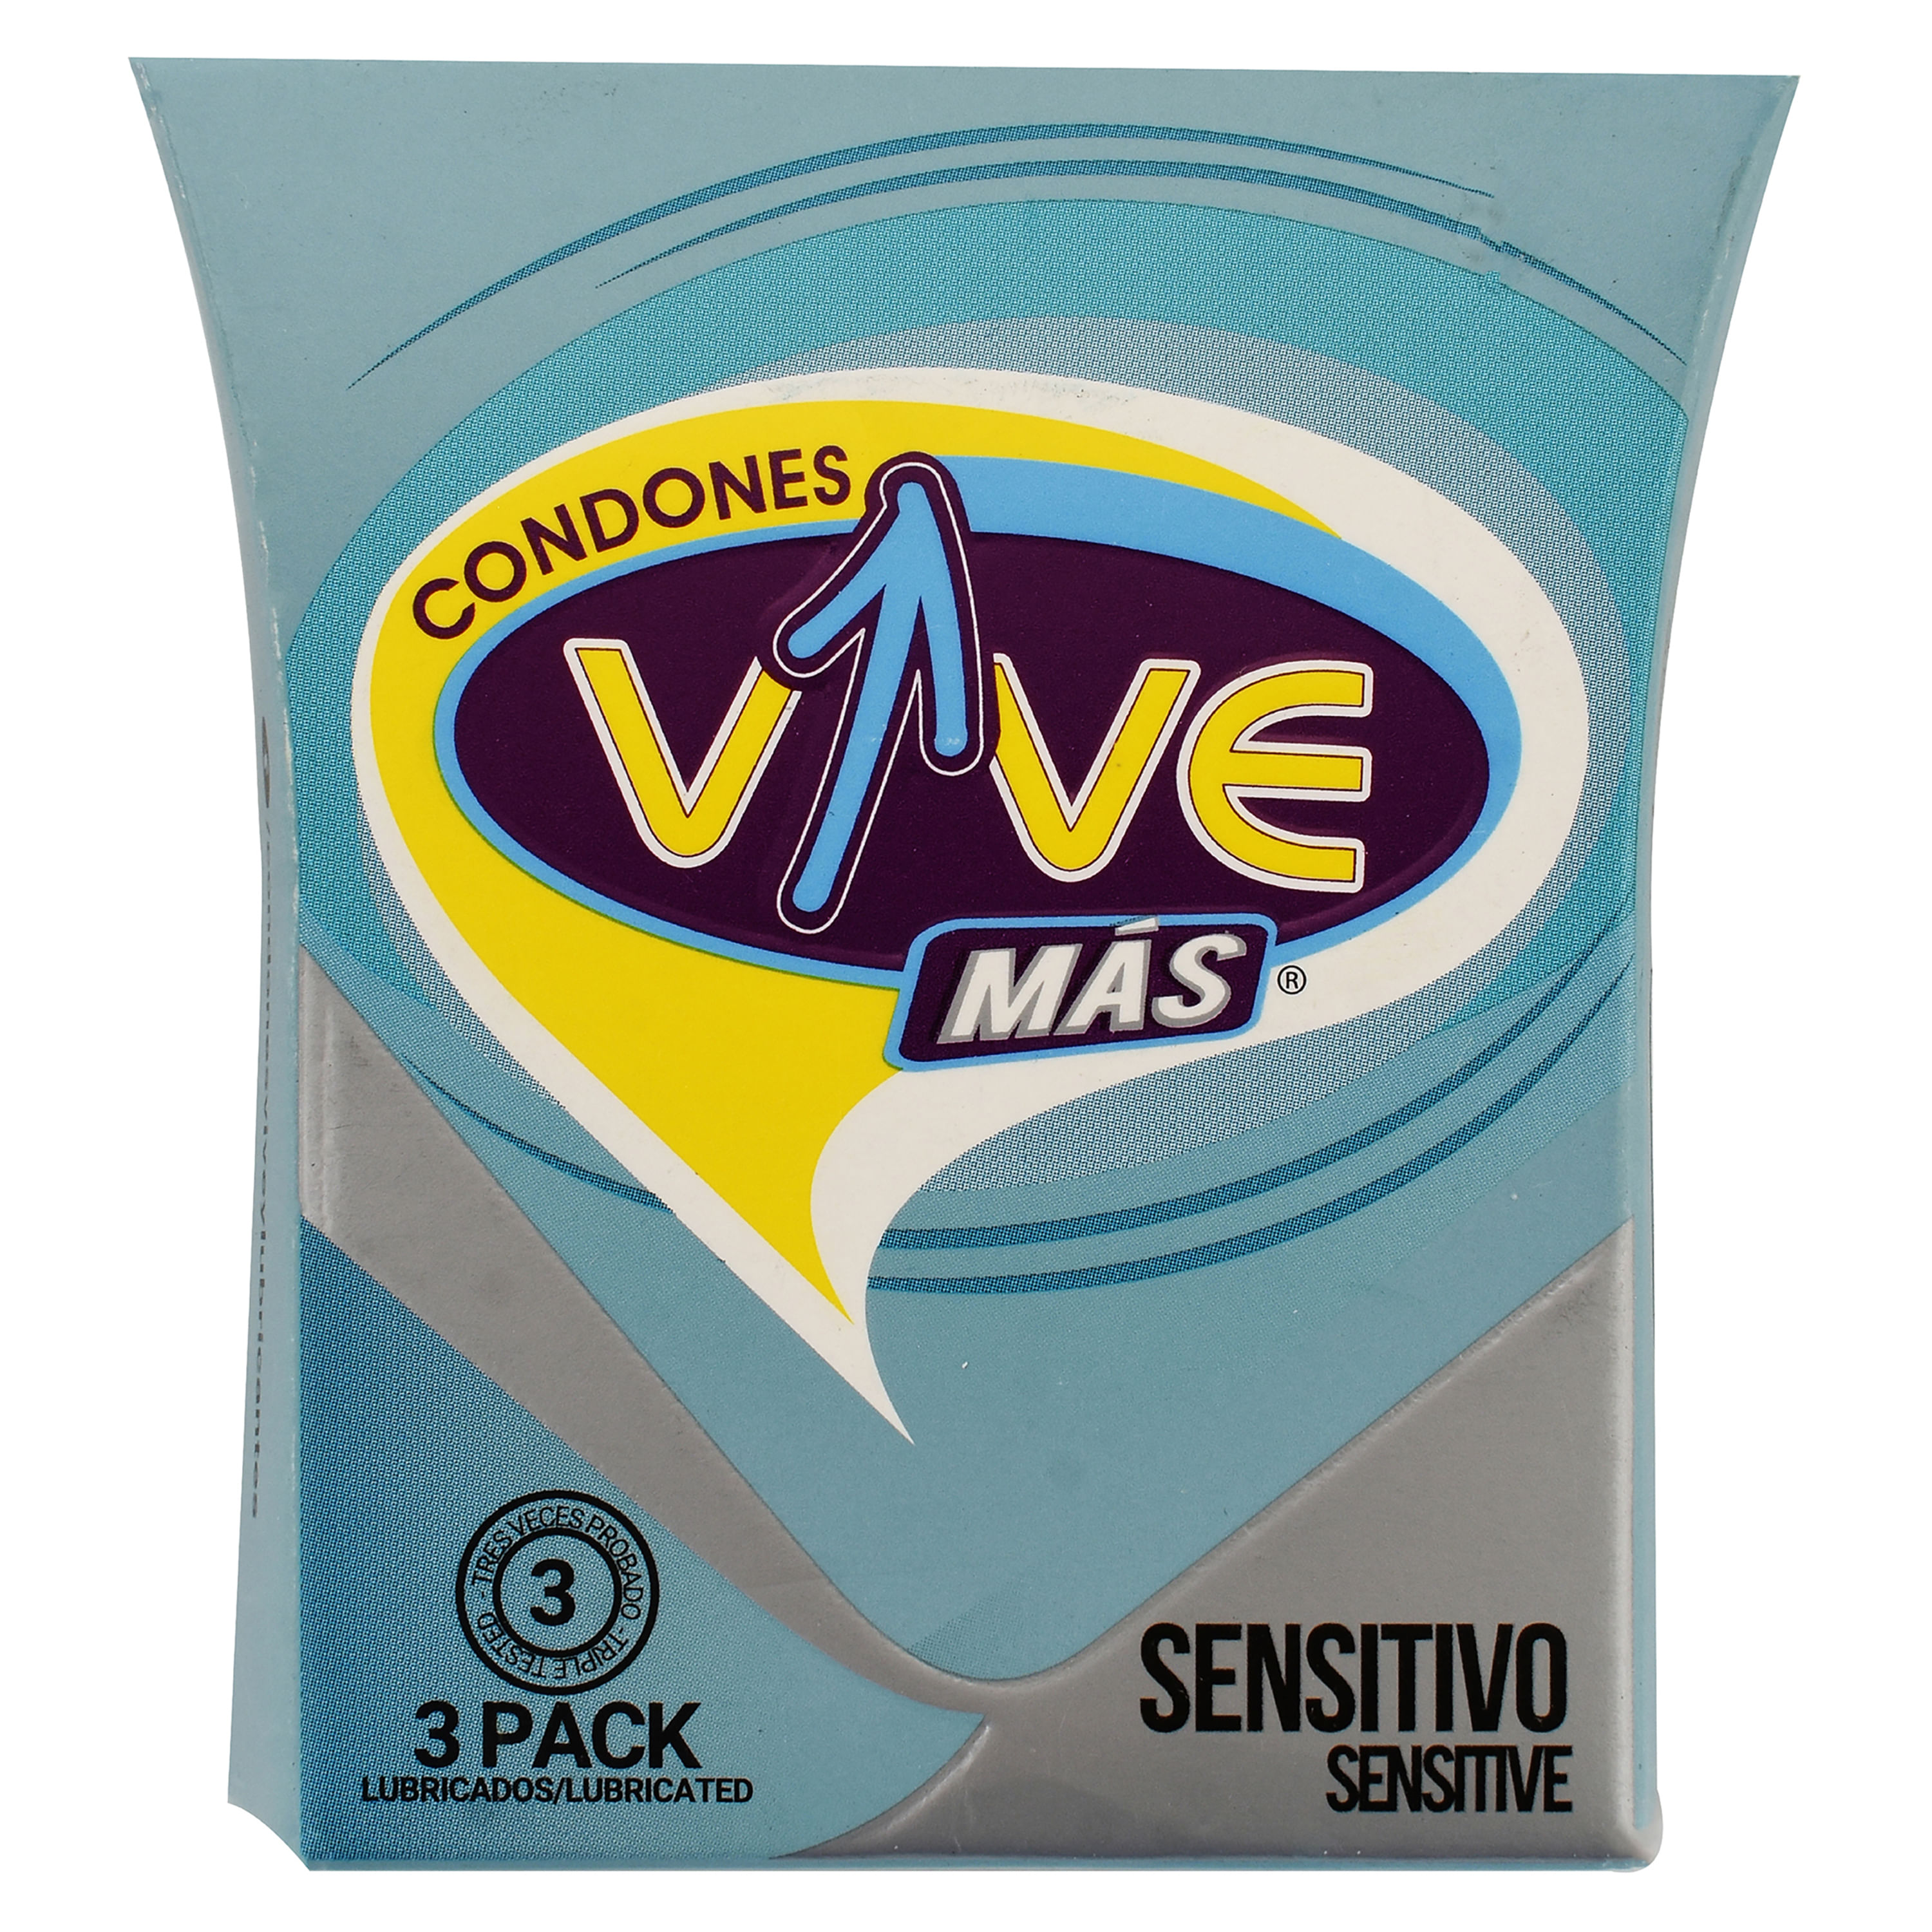 Profilactico-Vive-Sentivo-3-Unidades-1-30965